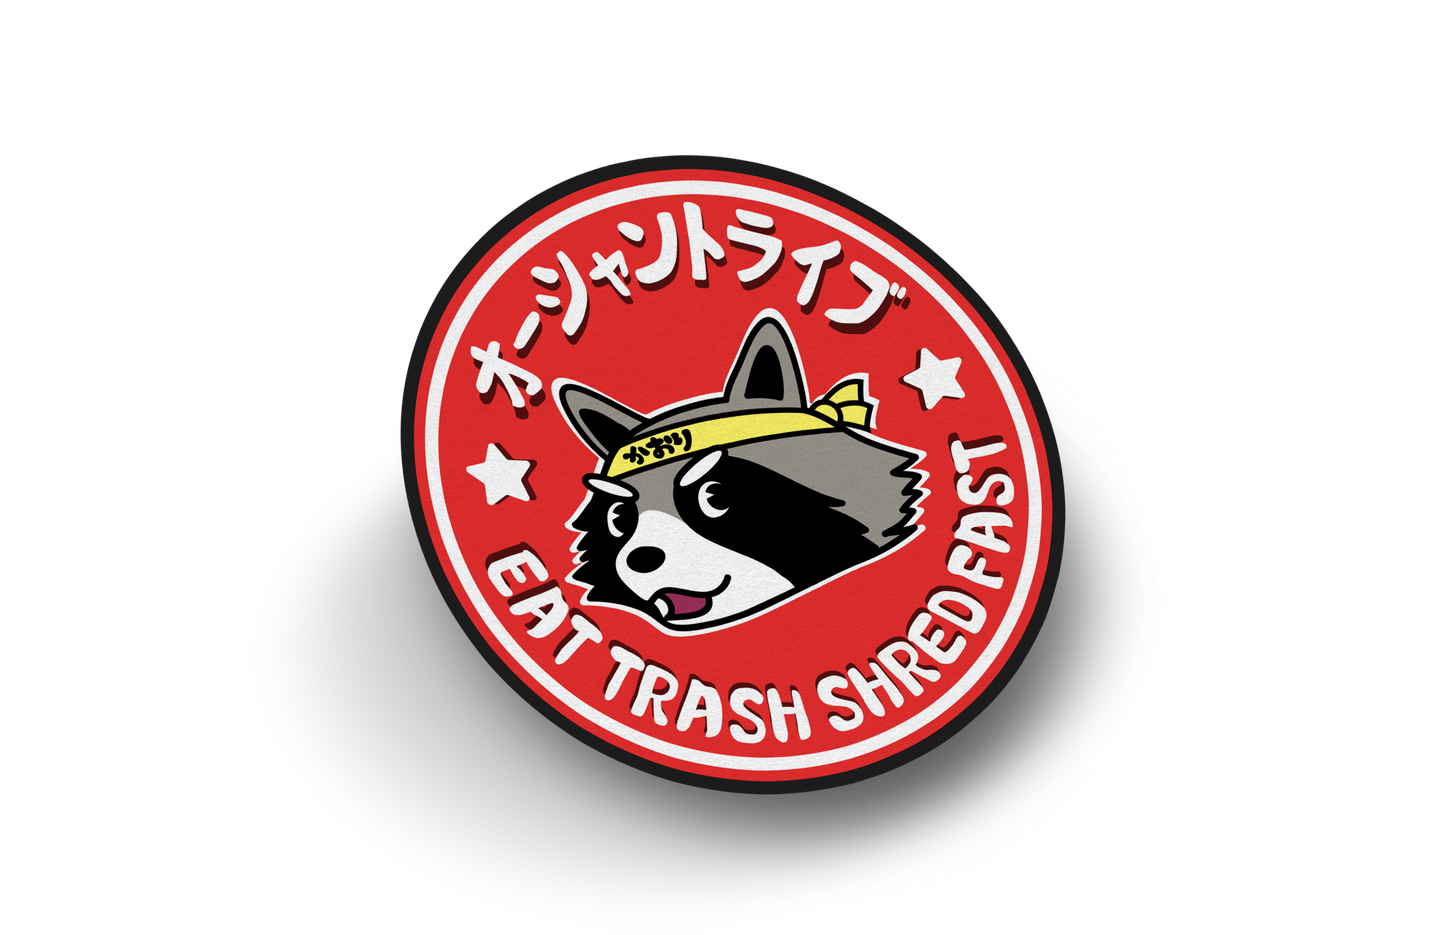 Eat Trash Shred Fast Sticker